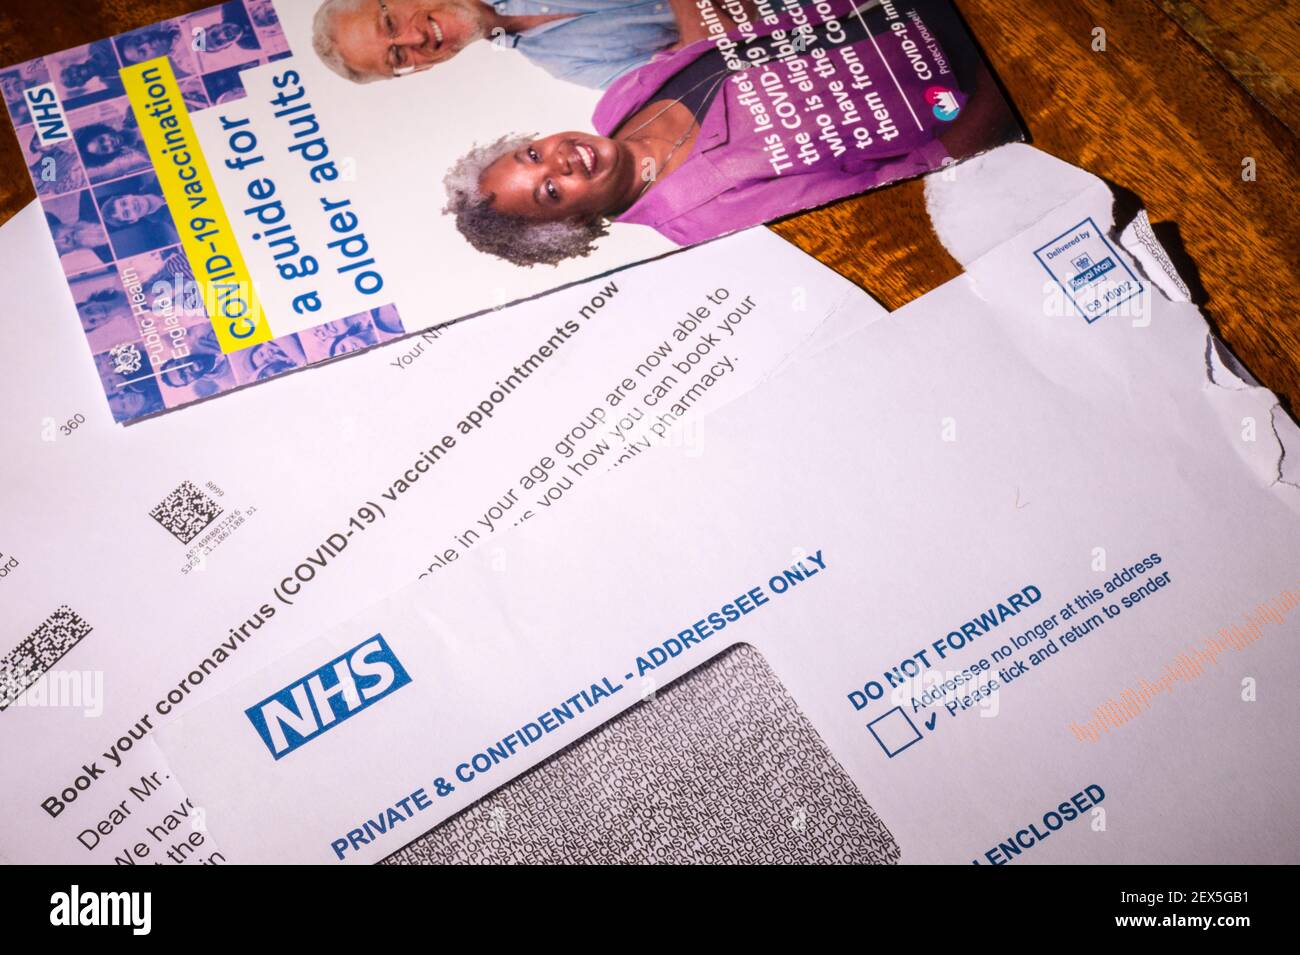 NHS Einladungsschreiben zur Buchung einer Coronavirus-Impfung für eine Person über 60 Jahre mit Merkblatt. Retuschiert, um persönliche Informationen zu entfernen. Stockfoto